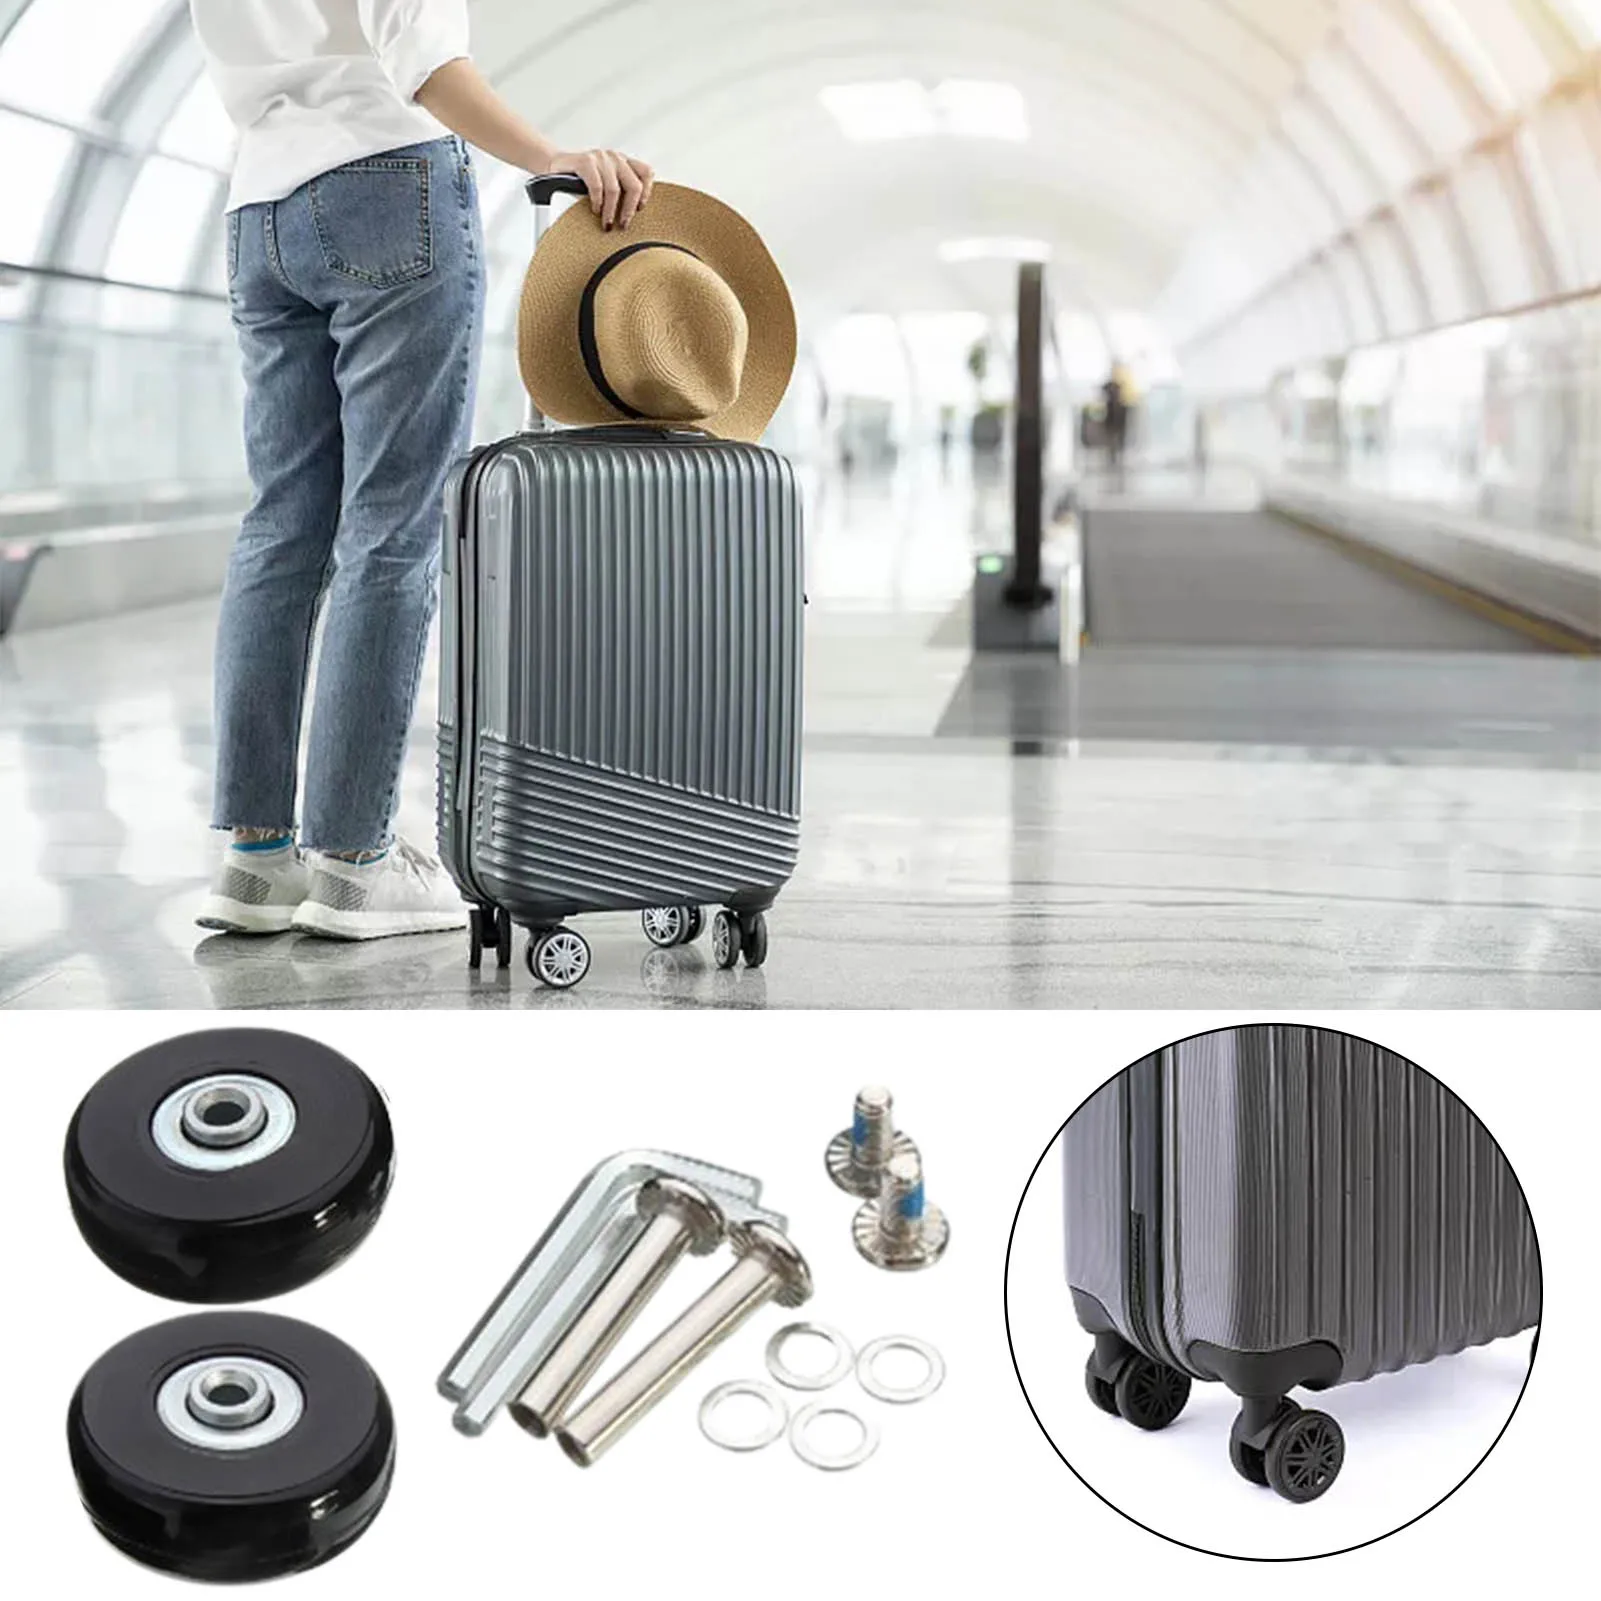 

Комплект для замены колеса для багажа, 50X18 мм, инструмент для ремонта колес для чемодана, оси колес, винты, шайбы, гаечные ключи